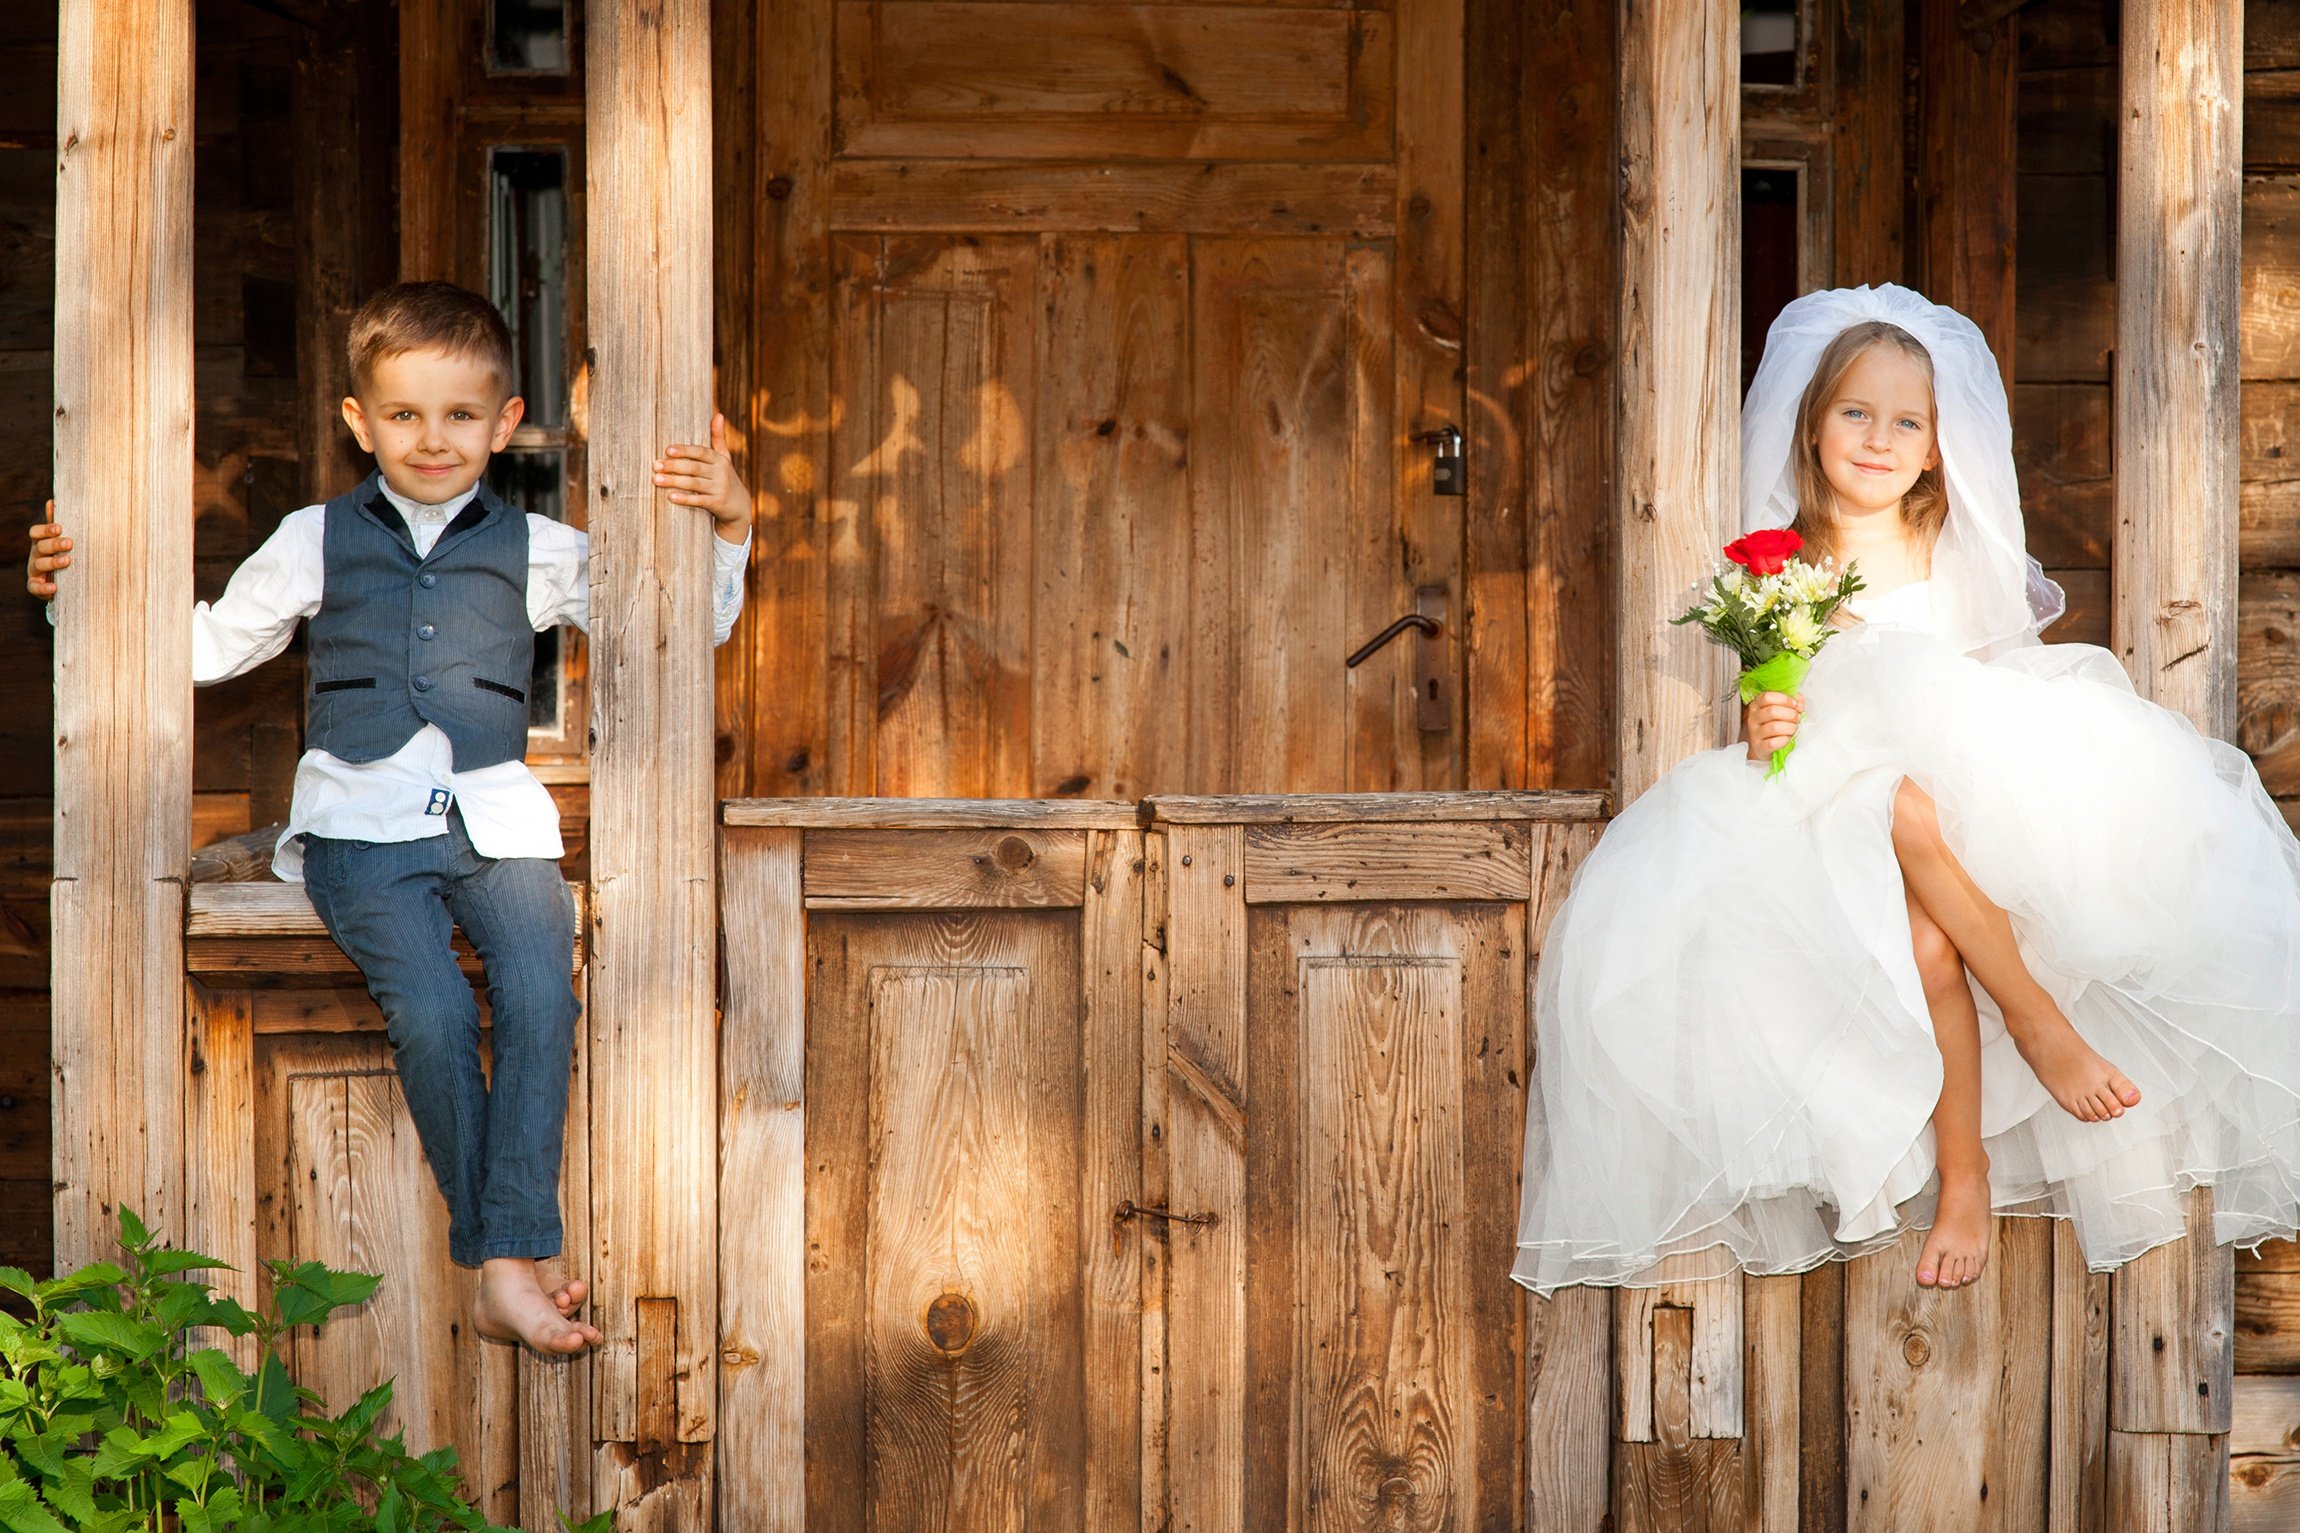 Дети в свадебных нарядах